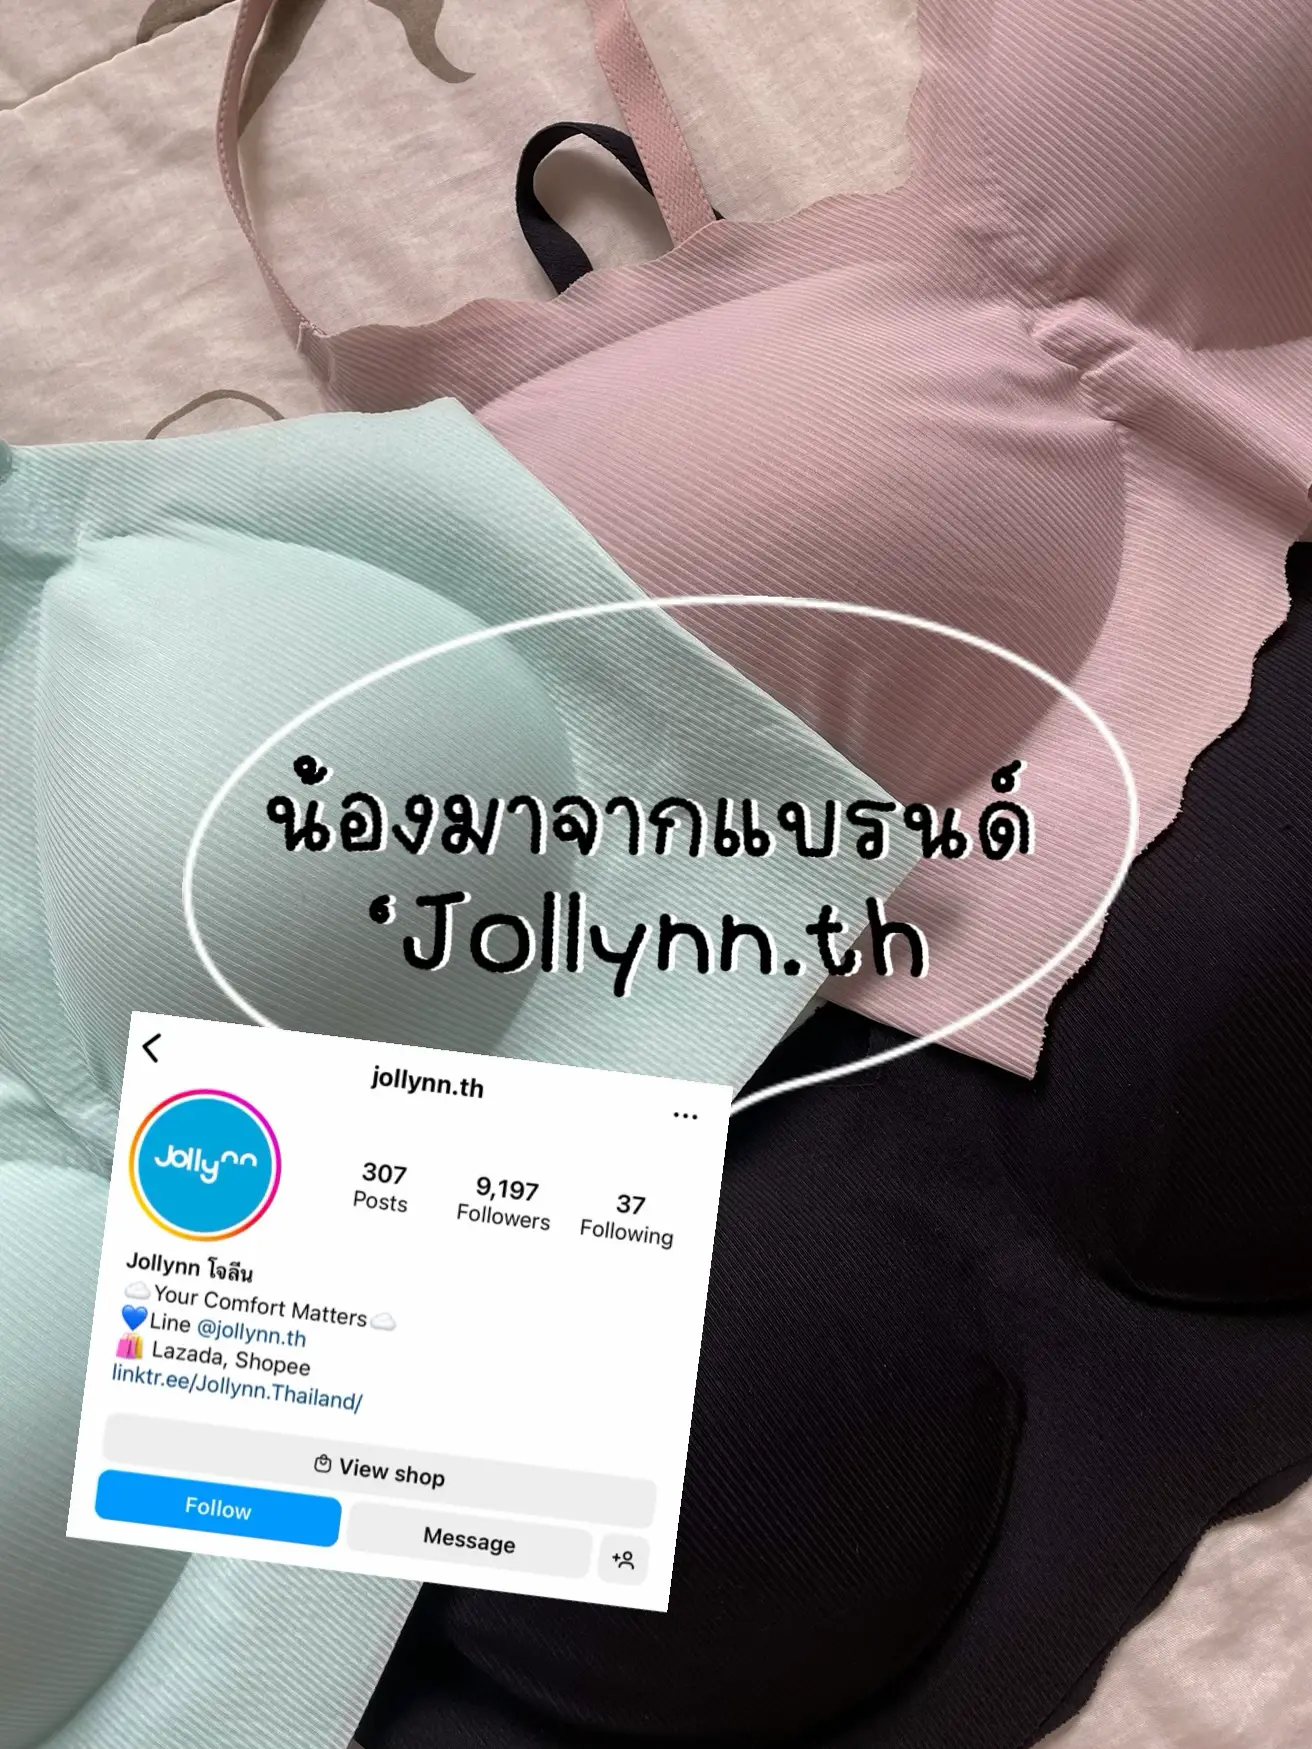 Uniqlo Thailand - Wireless Bra ของ Uniqlo คือดีงามต่อคนท้องด้วย